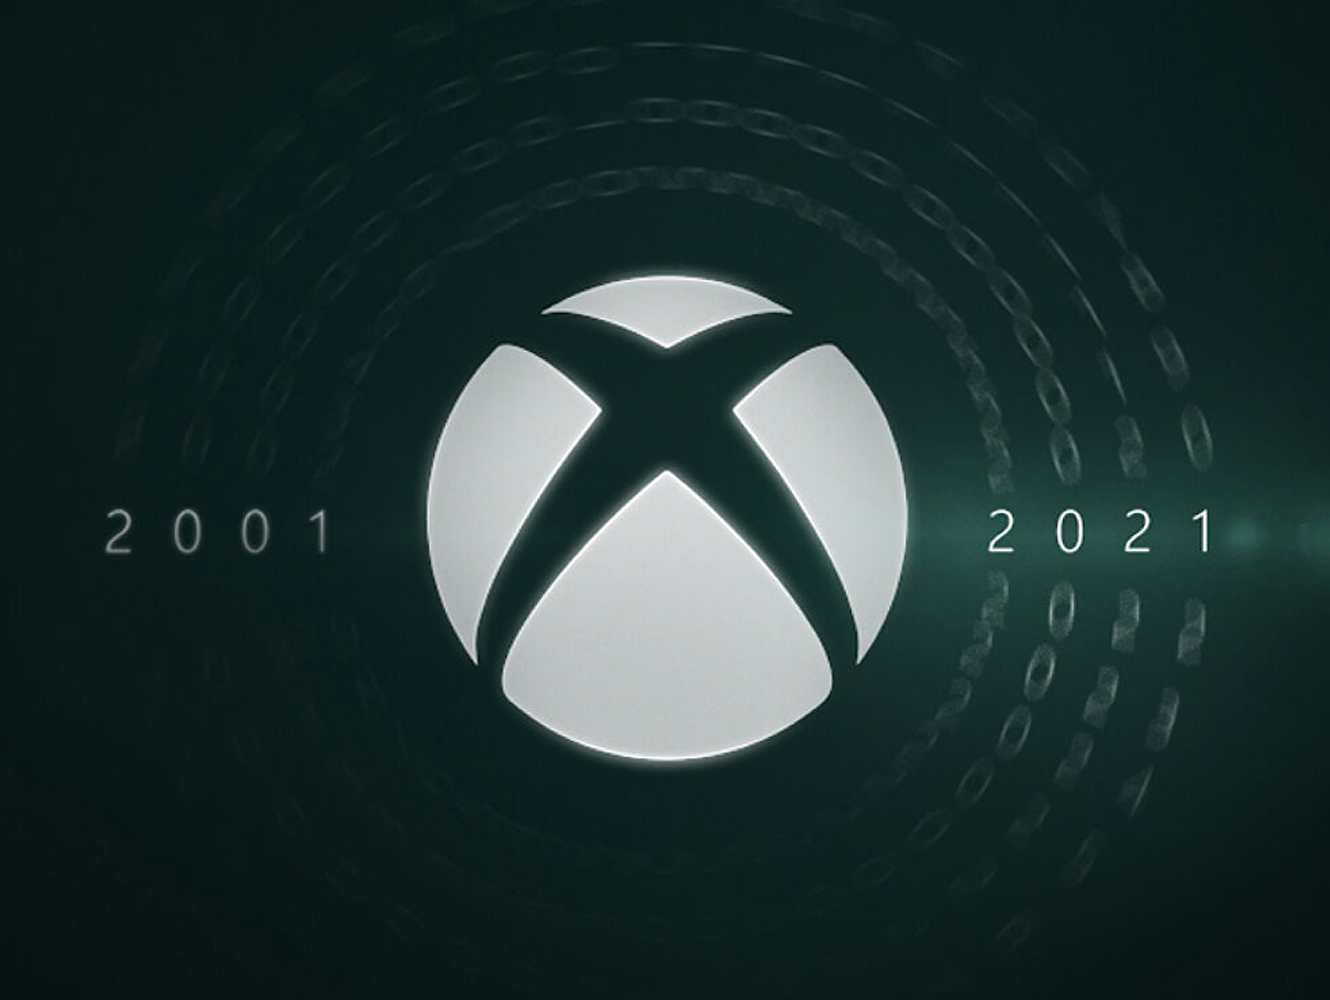 Xbox cumple 20 años y así lo celebra